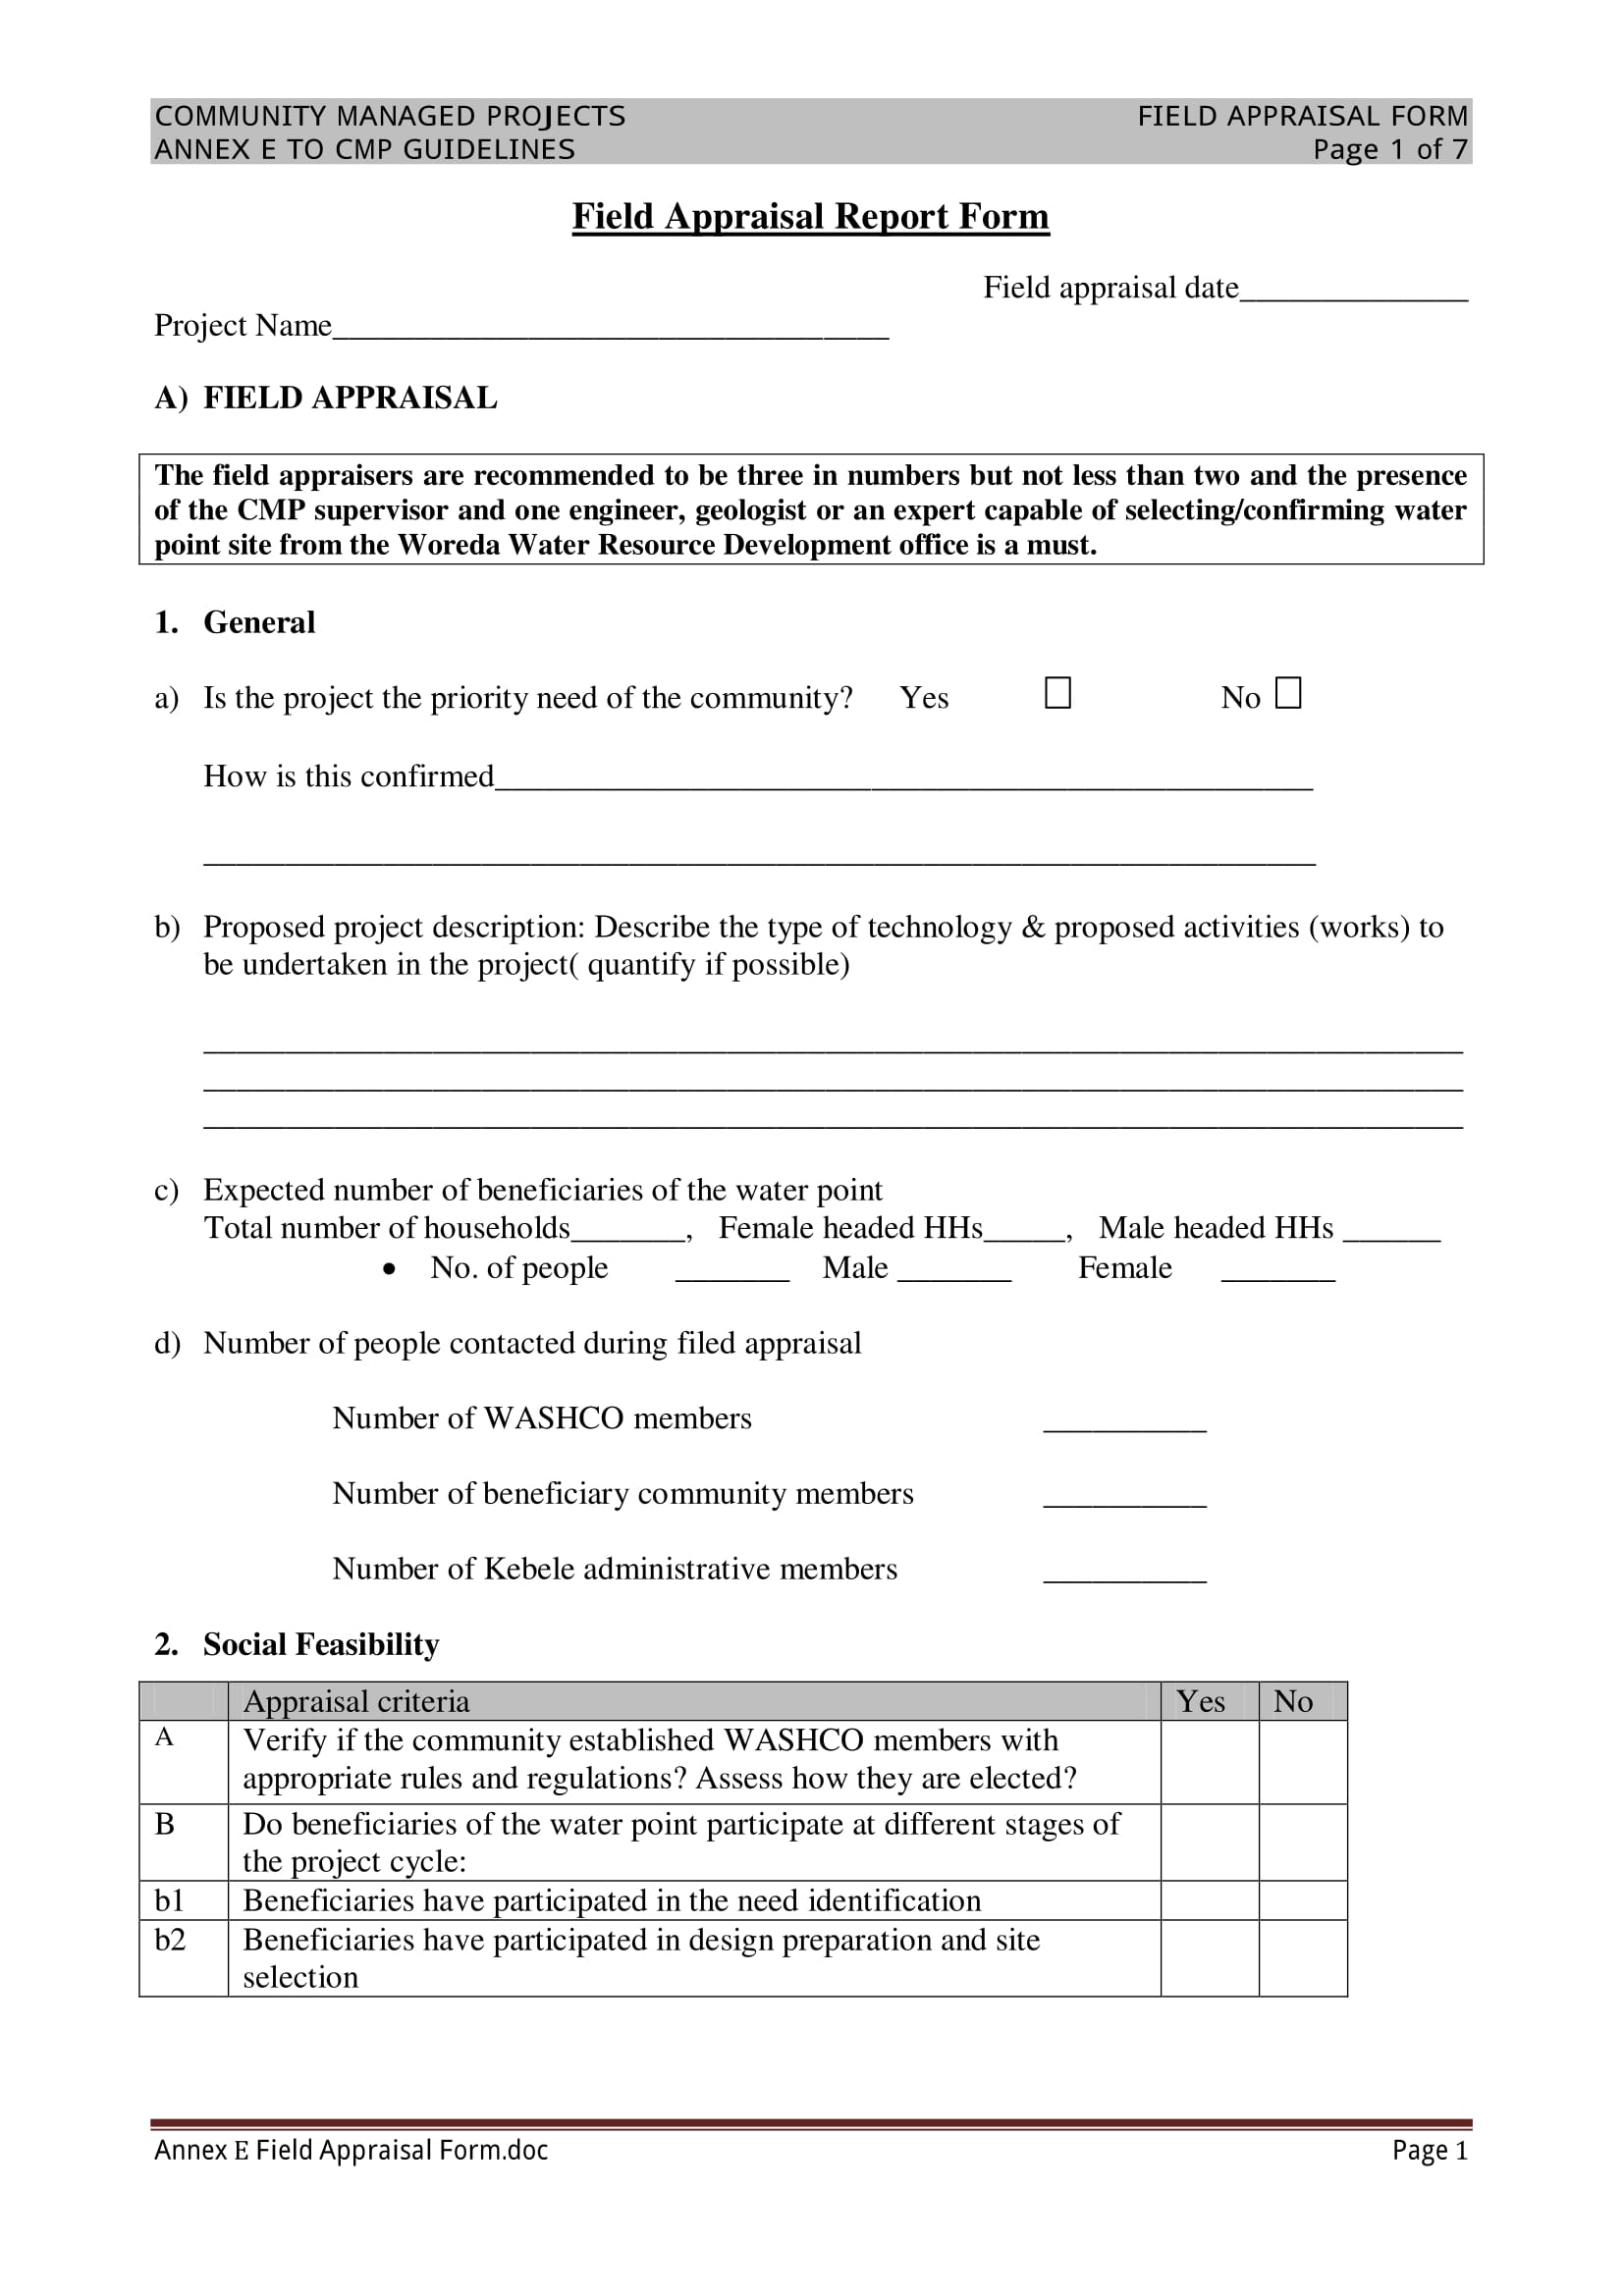 field appraisal report form 1